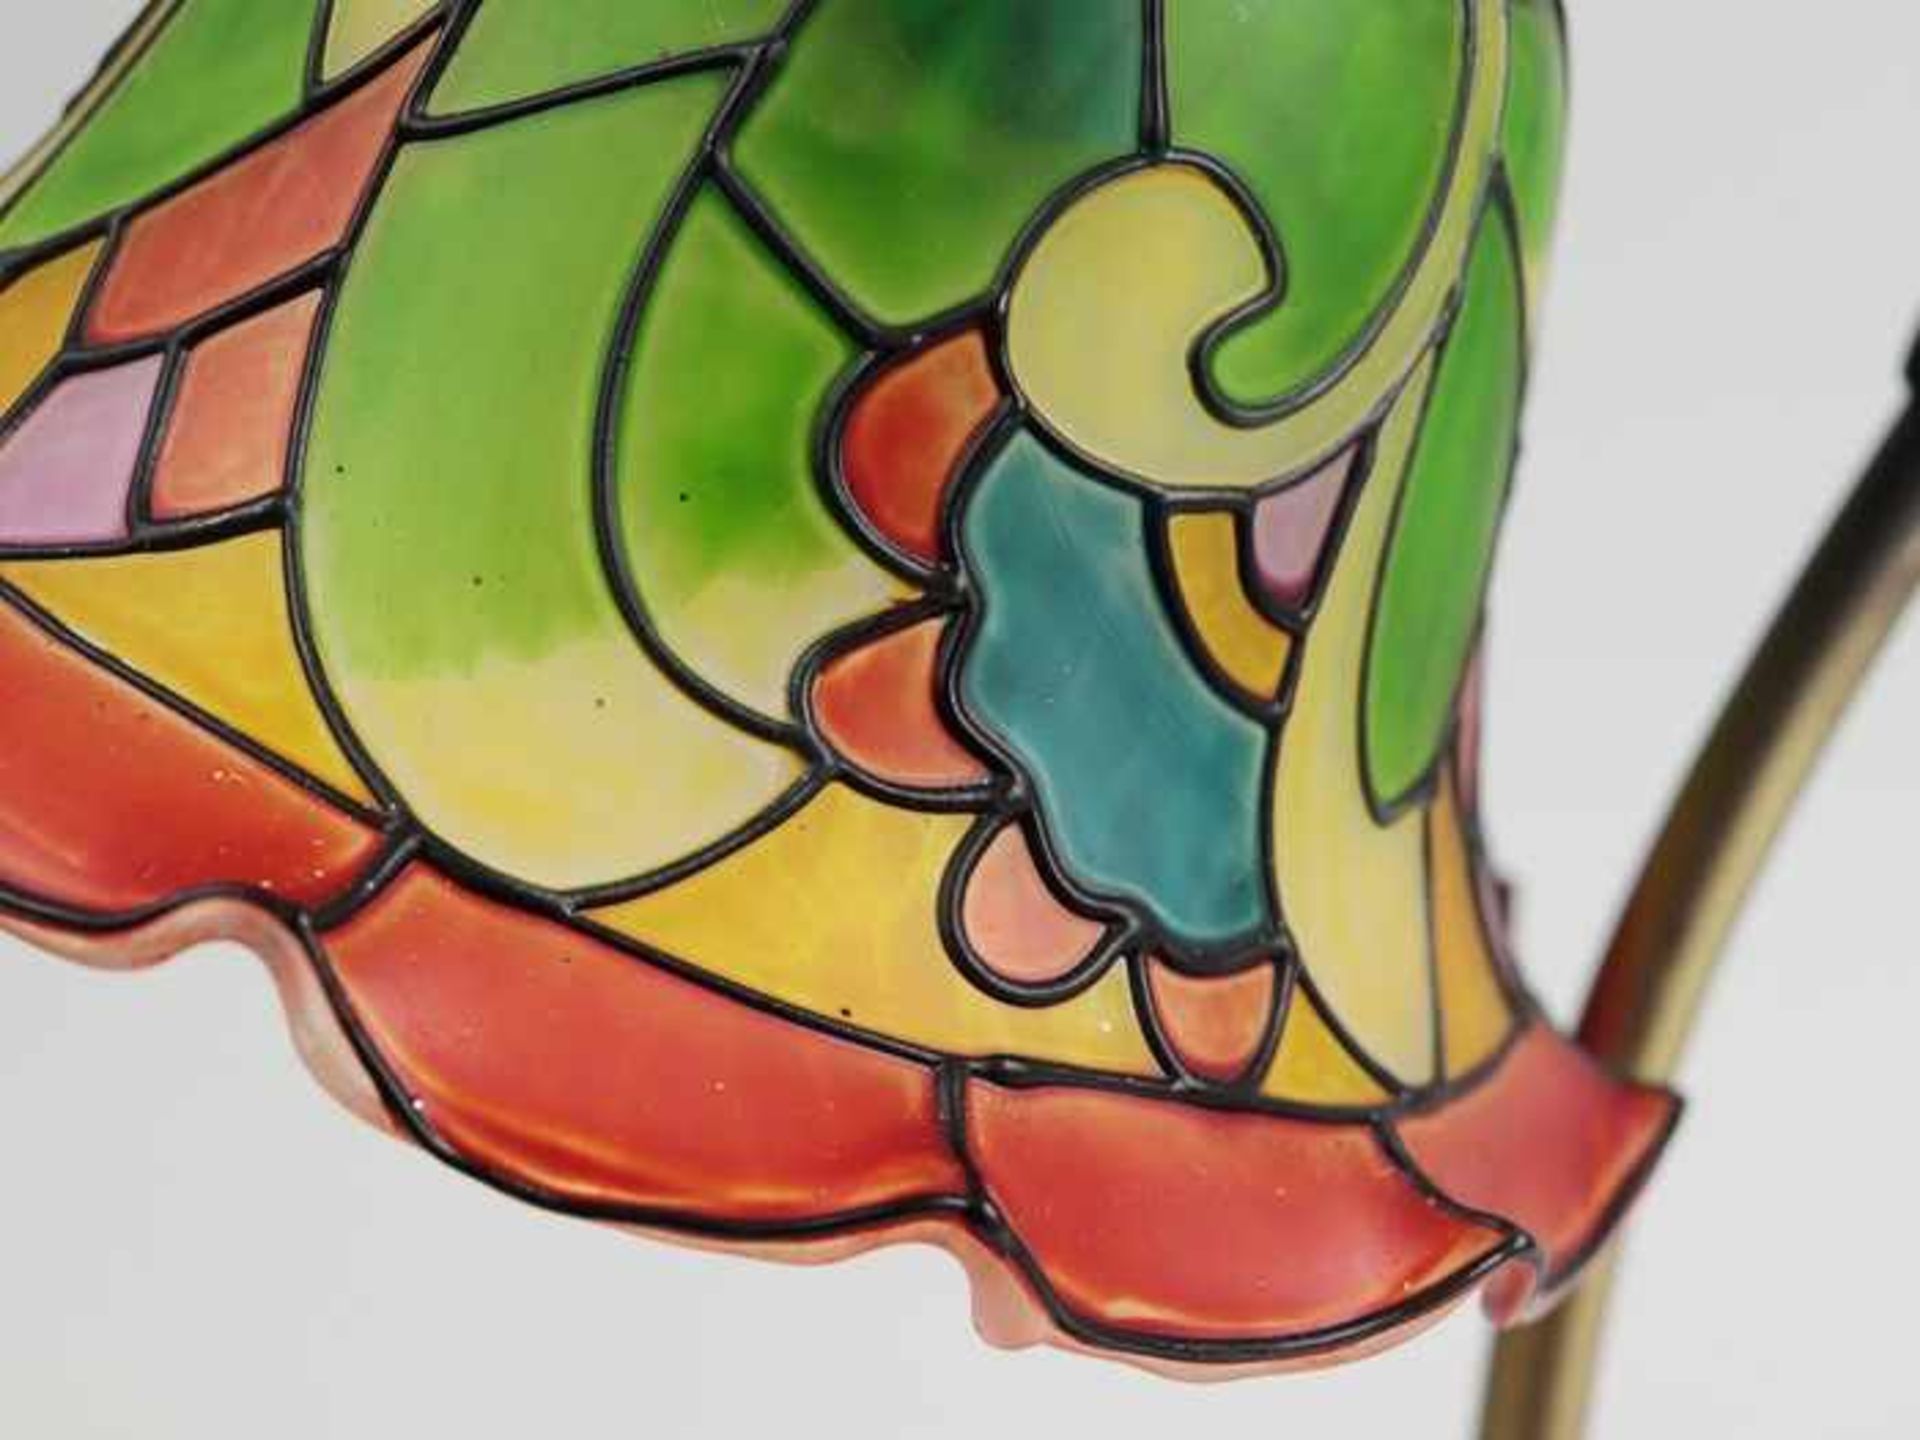 Tischlampebronzefarbenes Metall/Glas, einflammig, vegetabiler Fuß m. reliefierter Rose, gebogter - Bild 4 aus 5